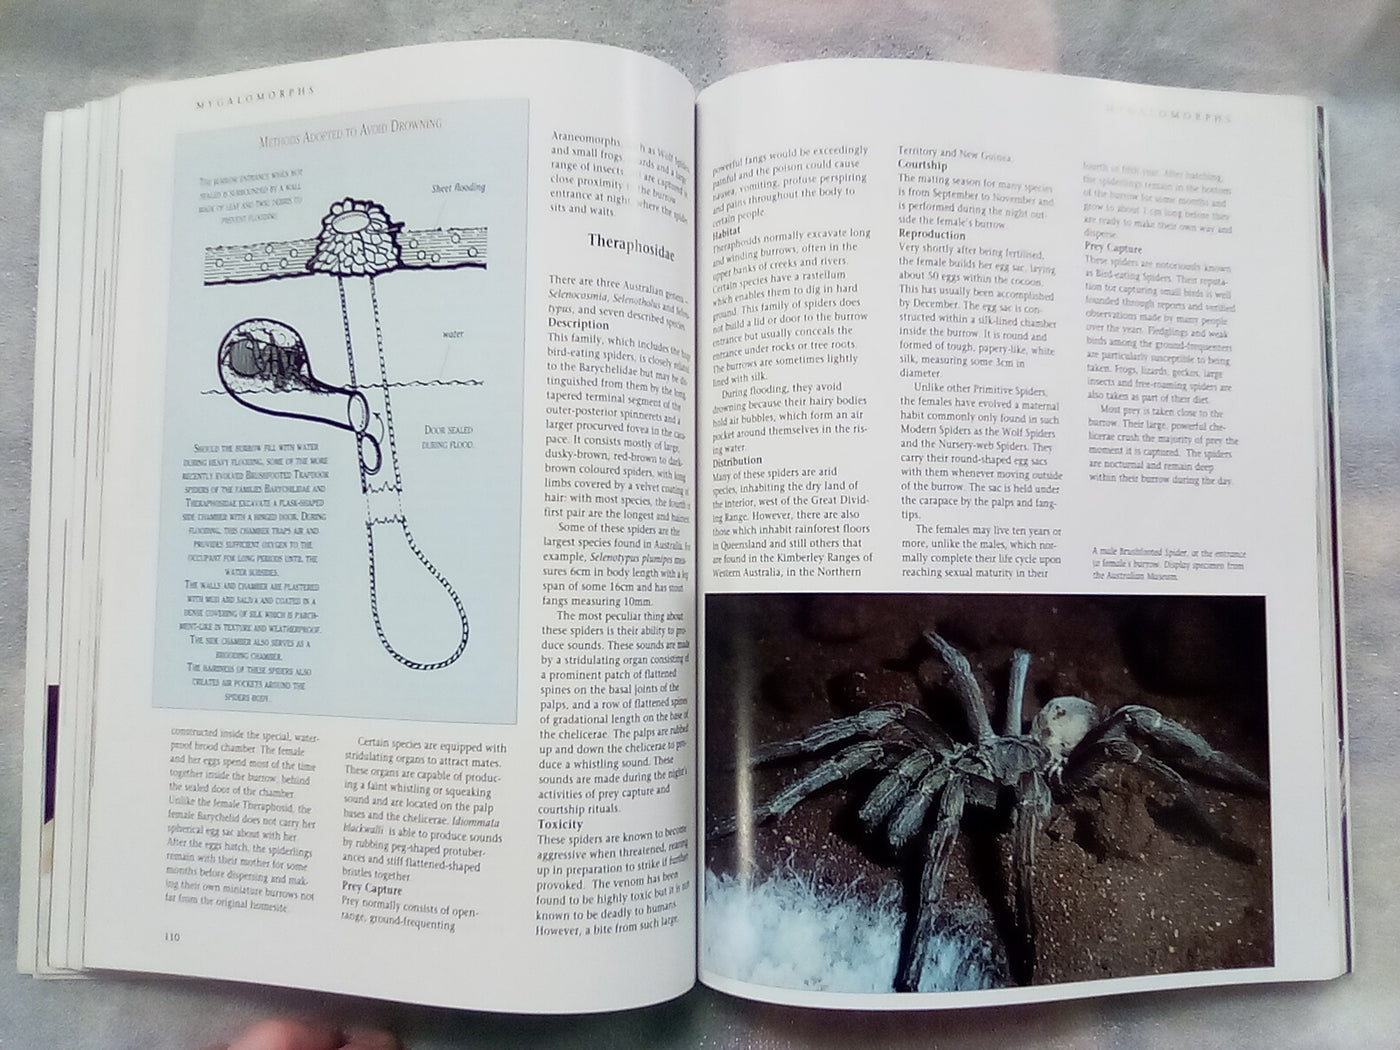 The Silken Web - A Natural History of Australian Spiders by Bert Brunet